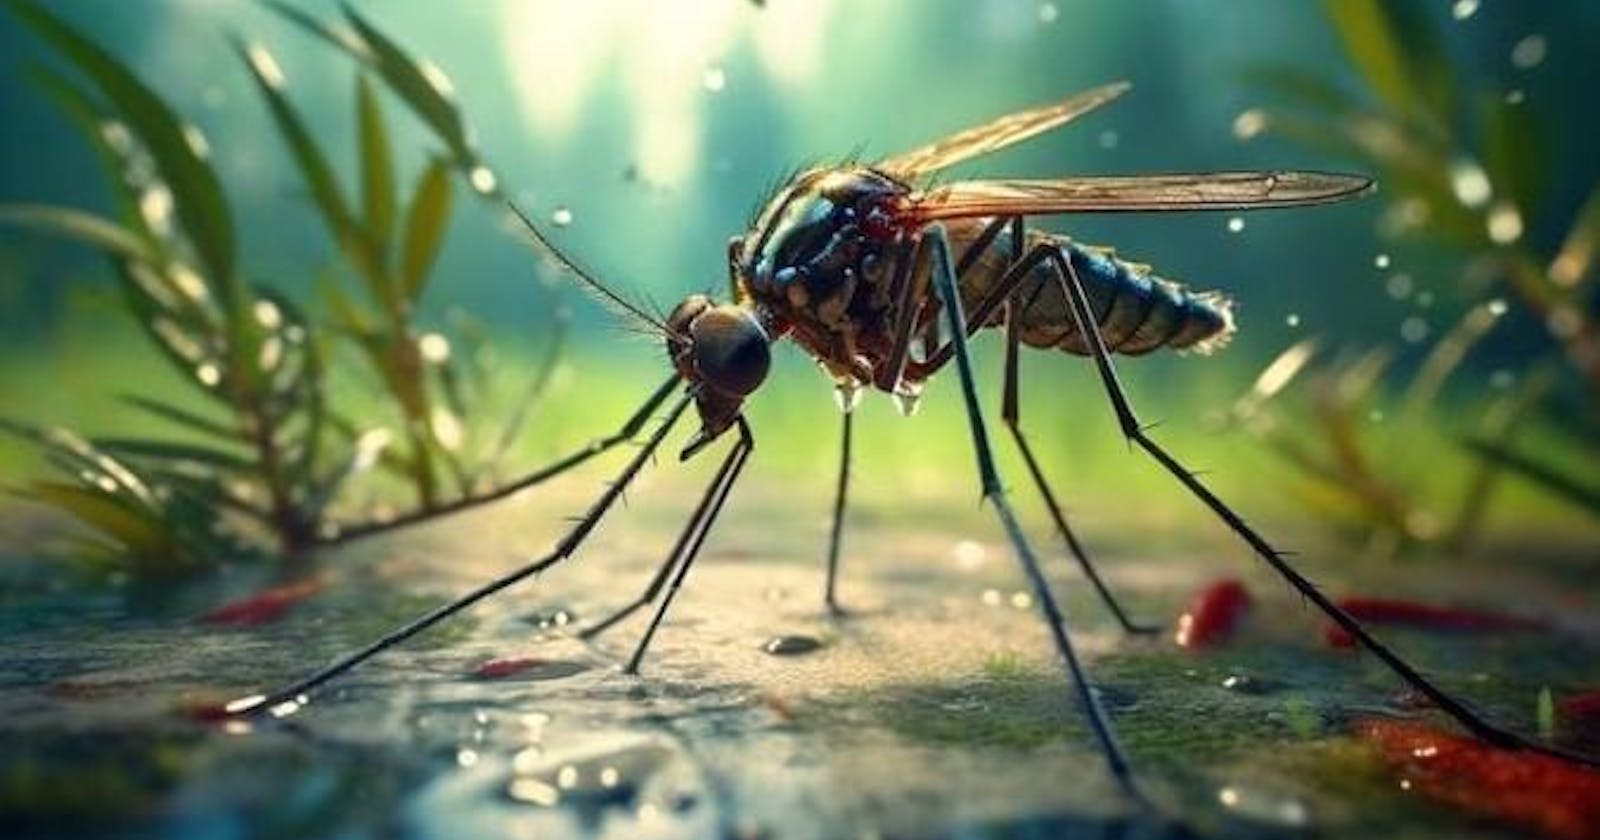 Dengue Fatal Disease Sometimes Increasing Worldwide